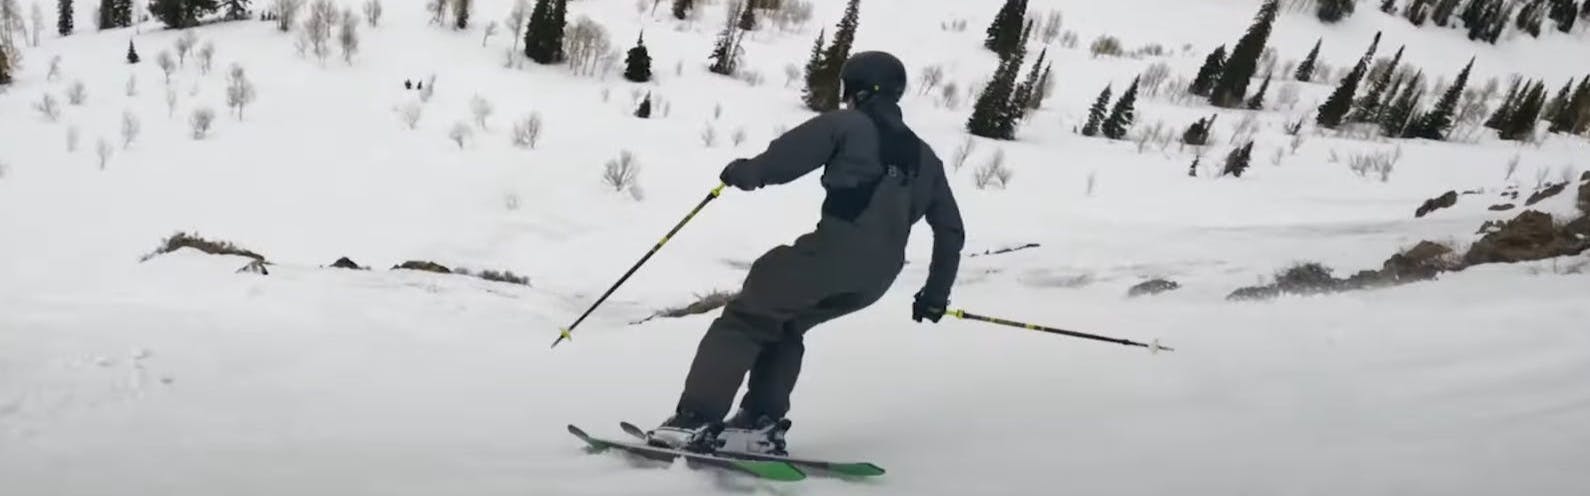 ski boots FULL TILT BOOTER, adjustable flex, quicfk fit, shock